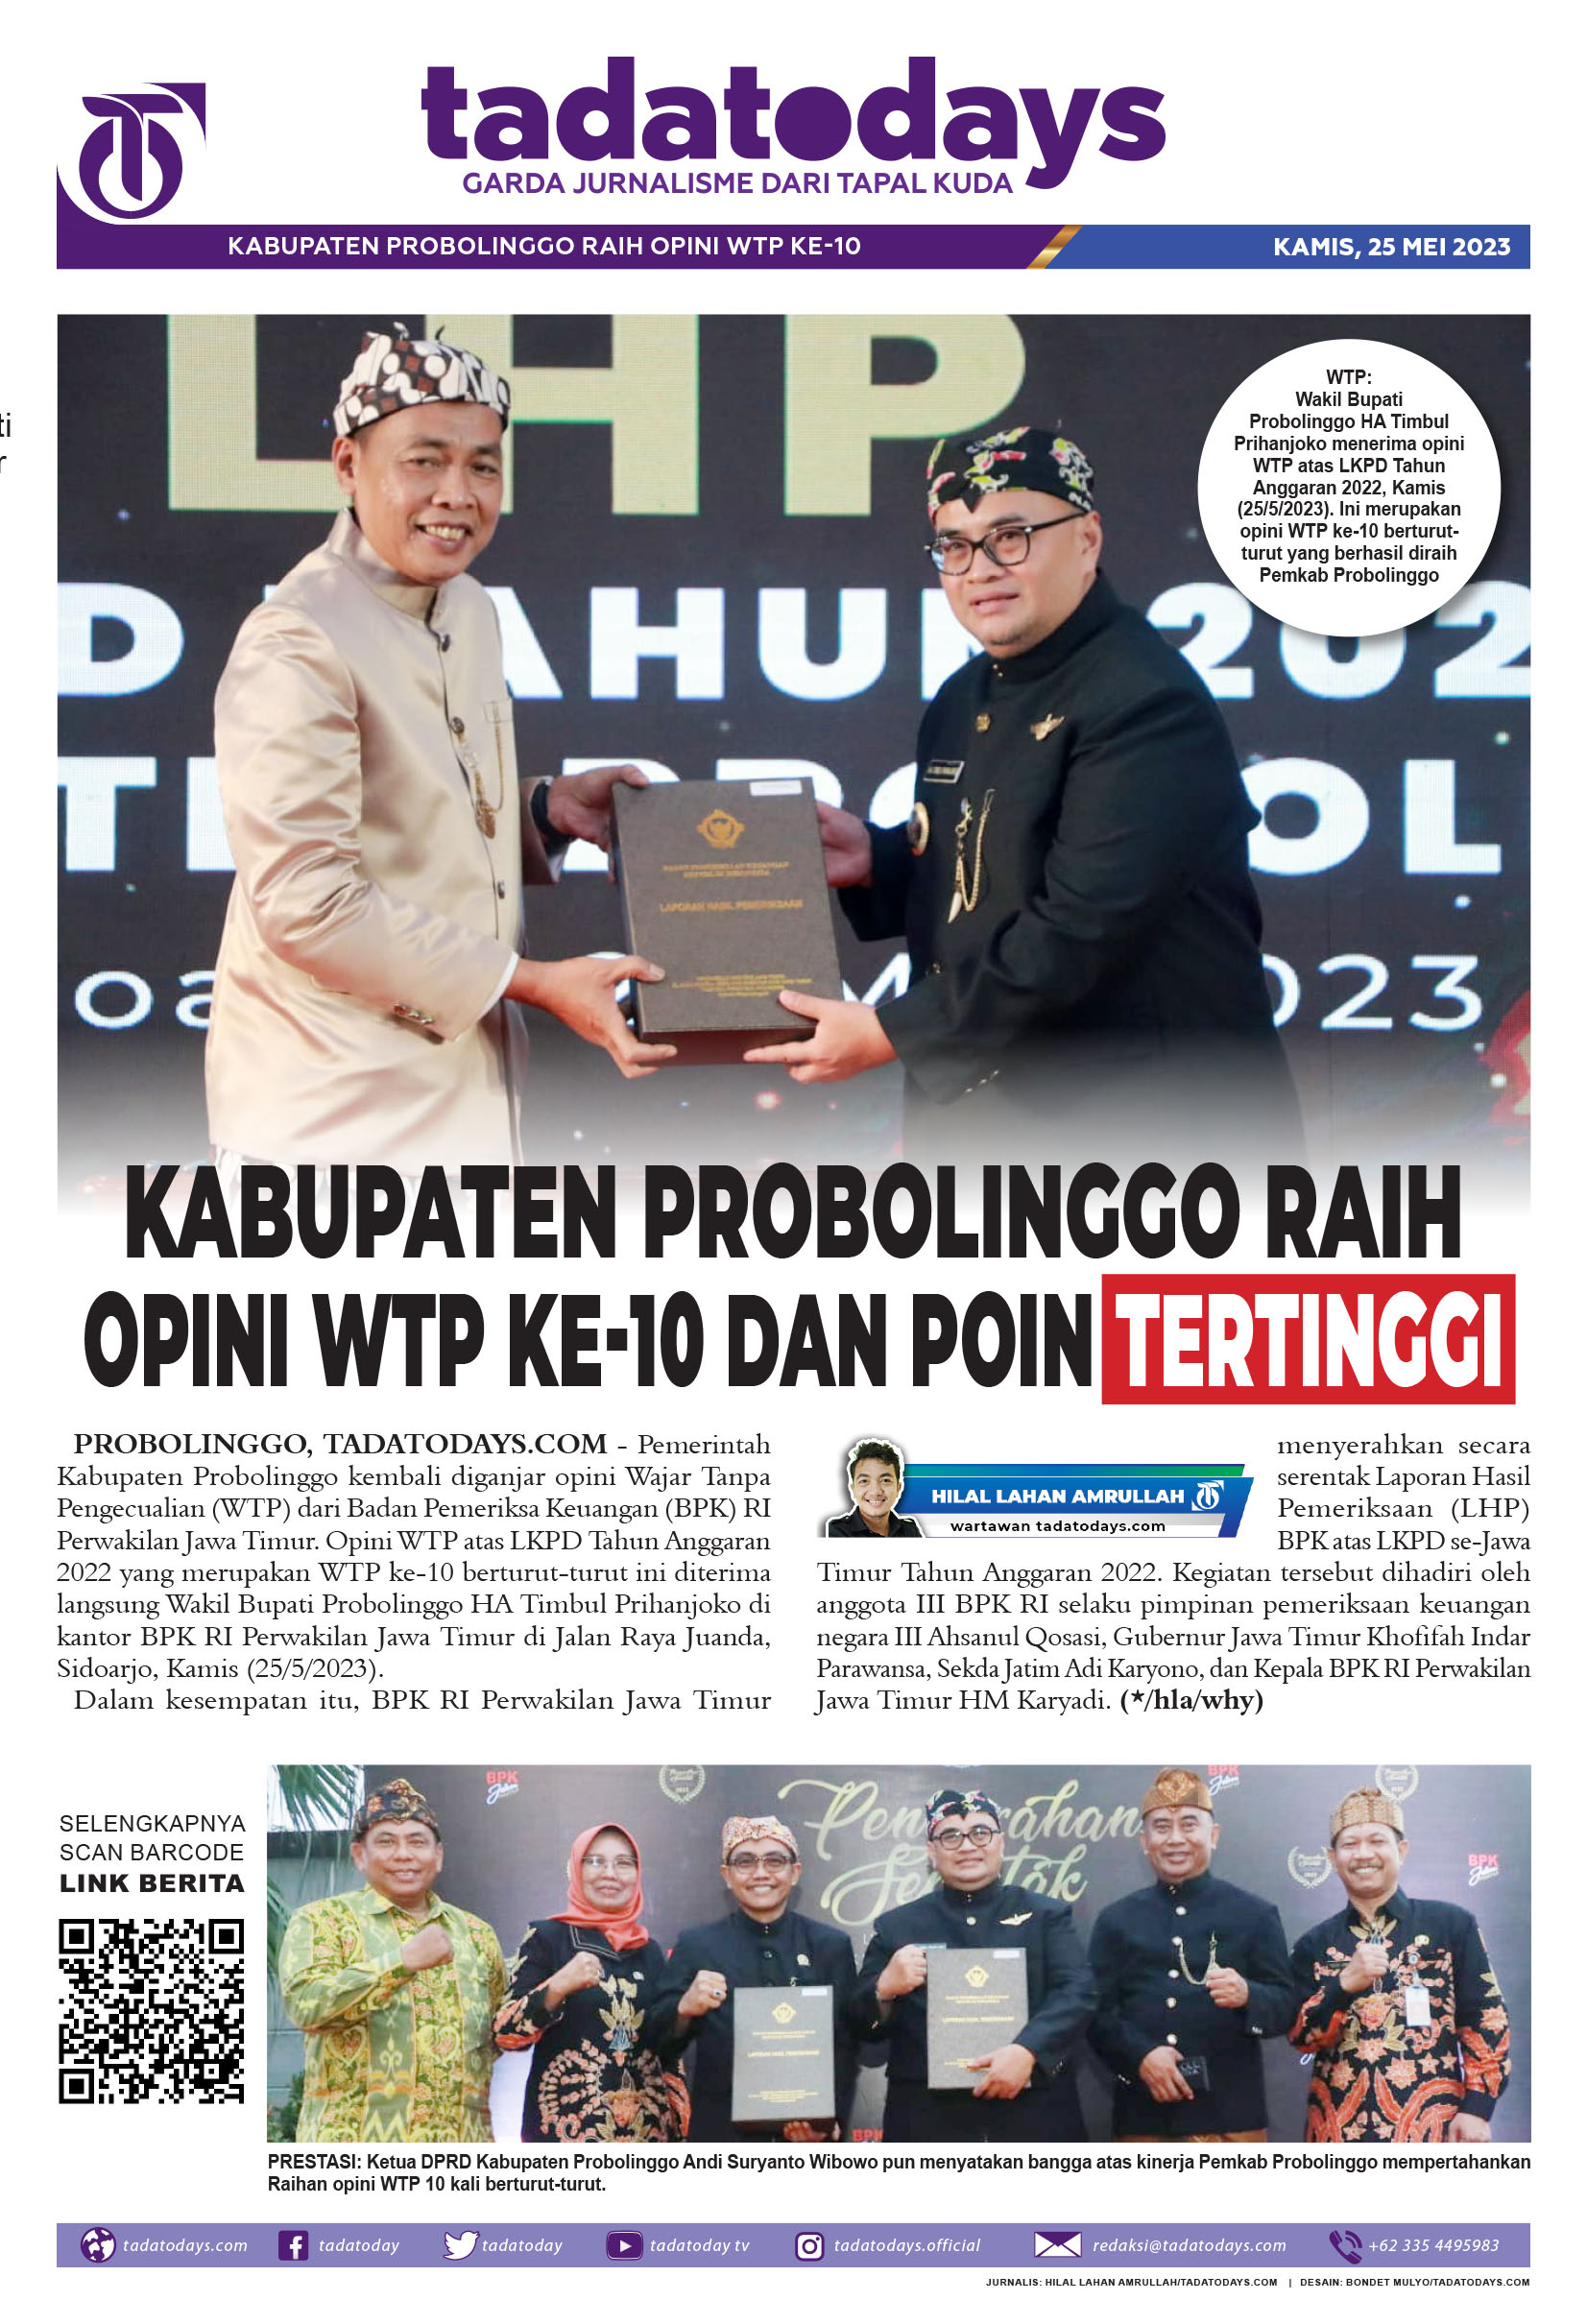 Kabupaten Probolinggo Meraih Opini WTP ke-10 dan Poin Tertinggi